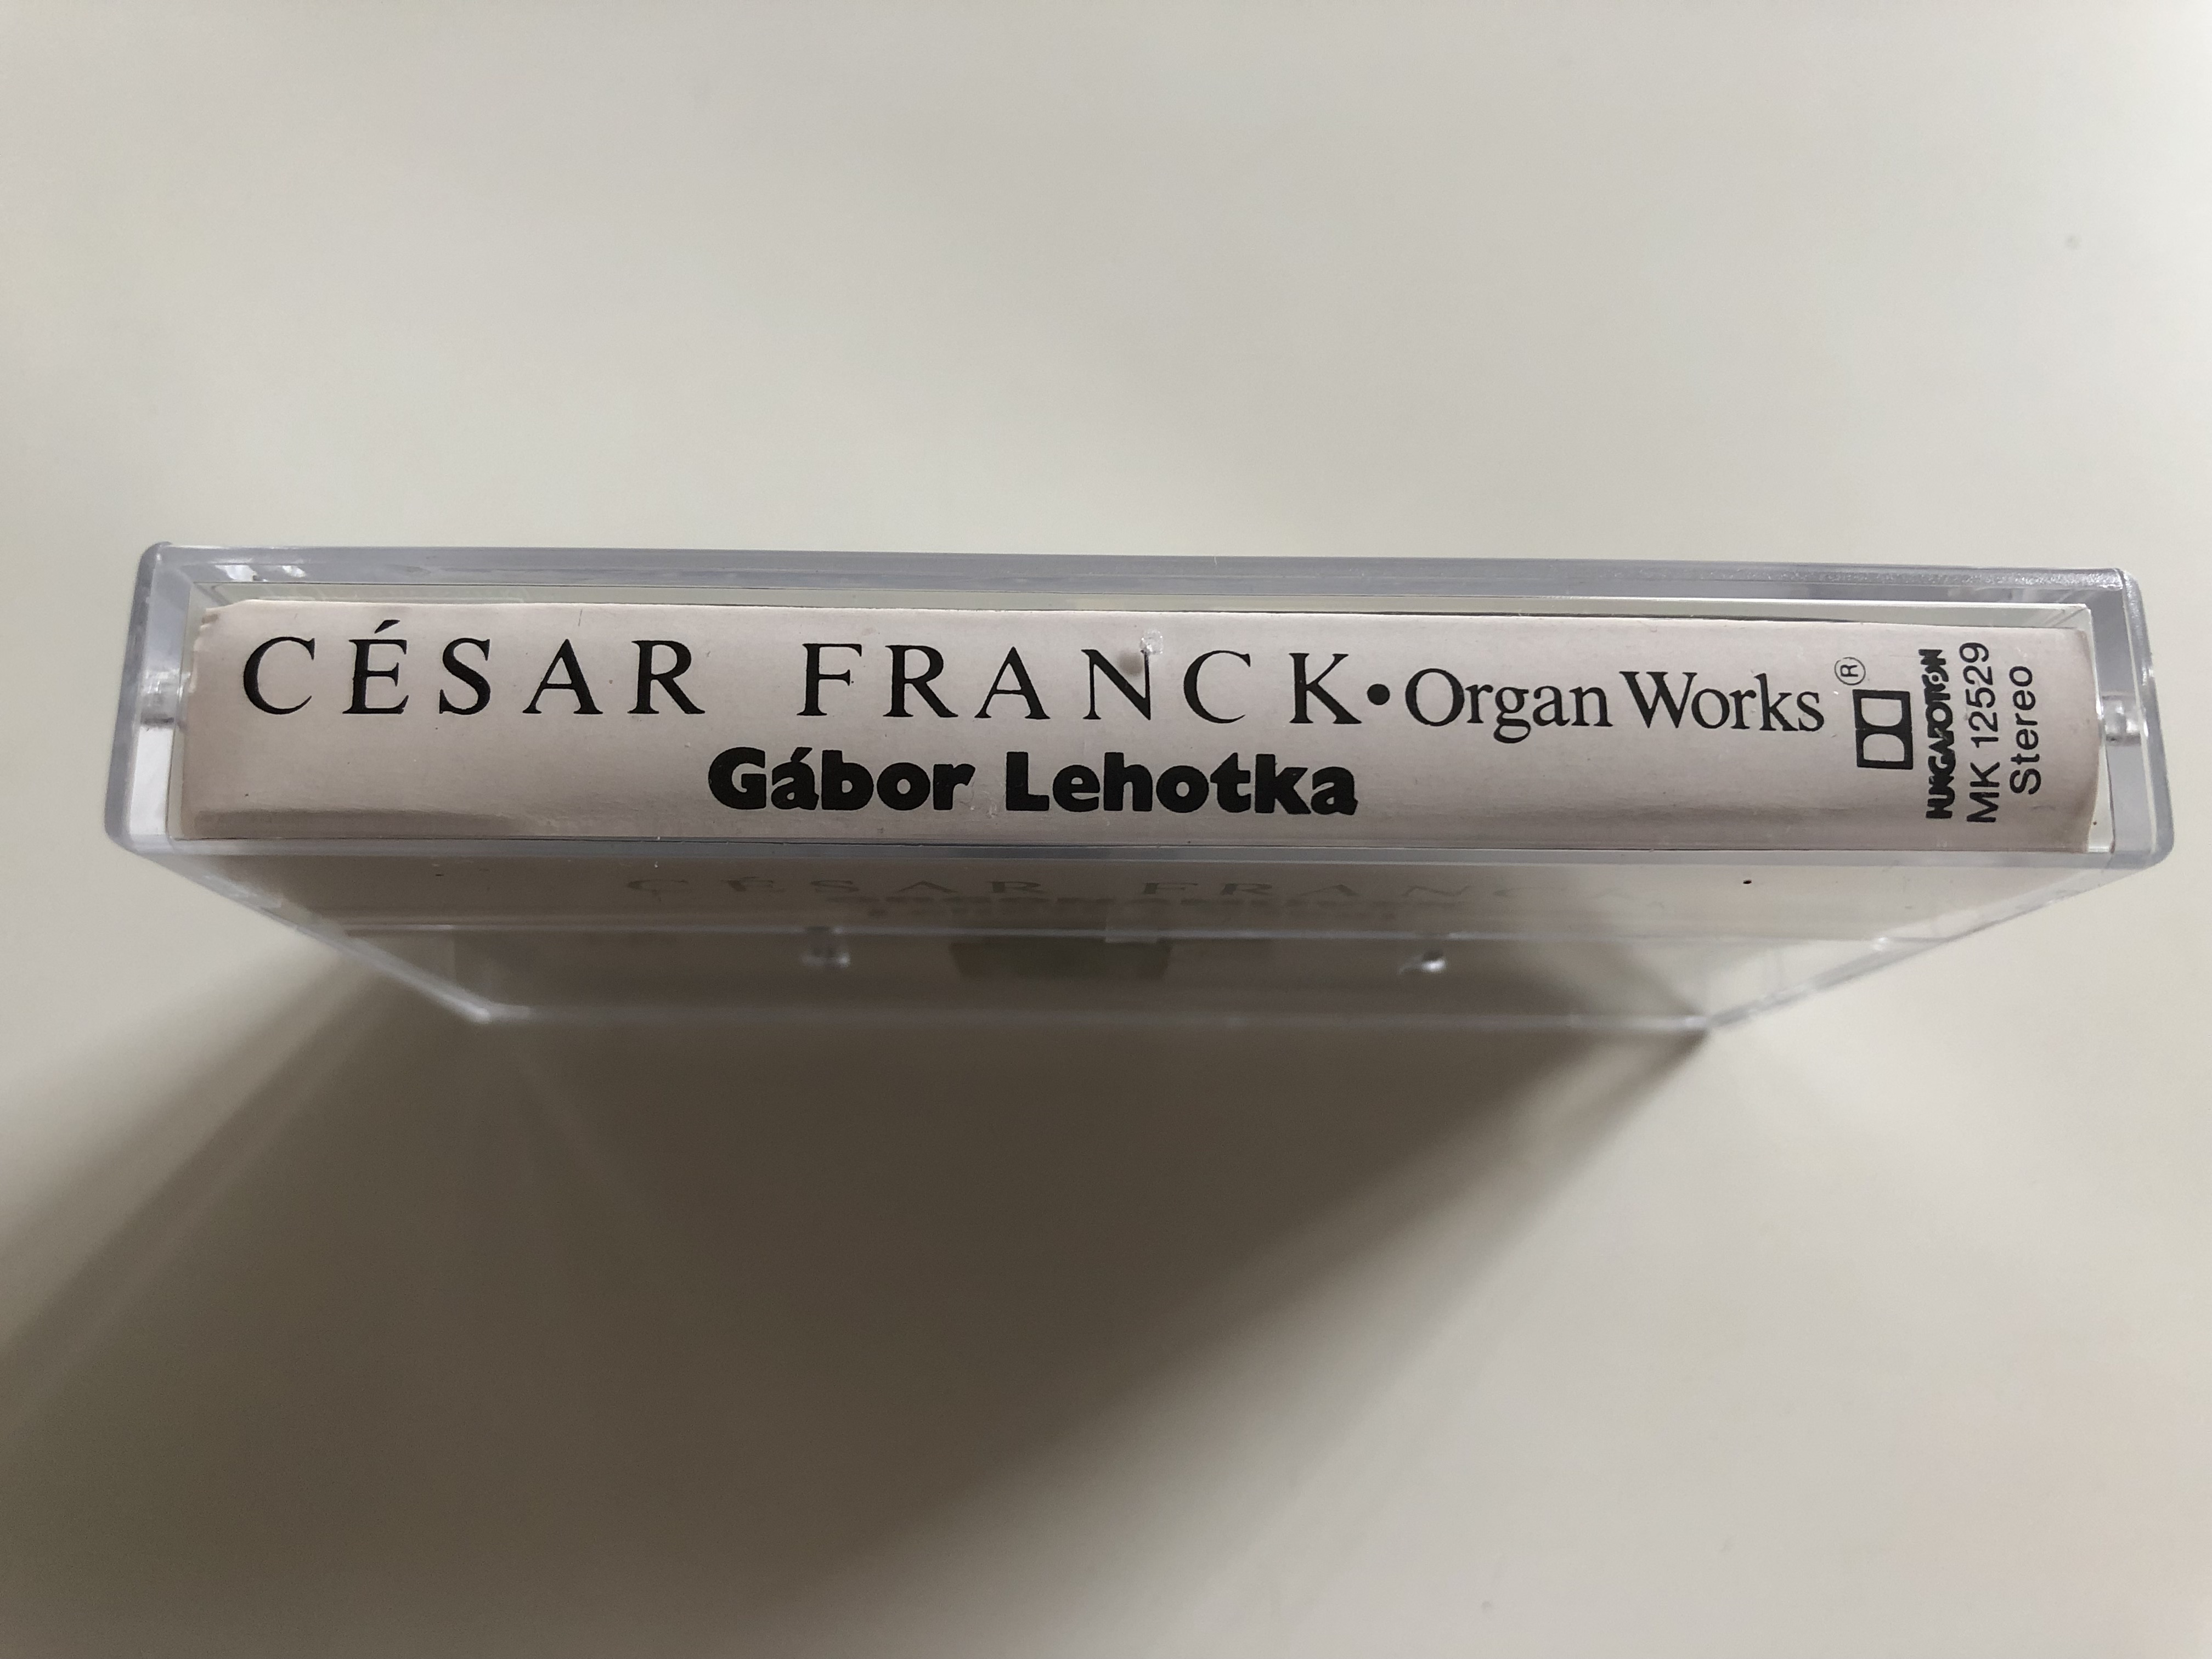 c-sar-franck-organ-works-g-bor-lehotka-hungaroton-cassette-stereo-mk-12529-4-.jpg